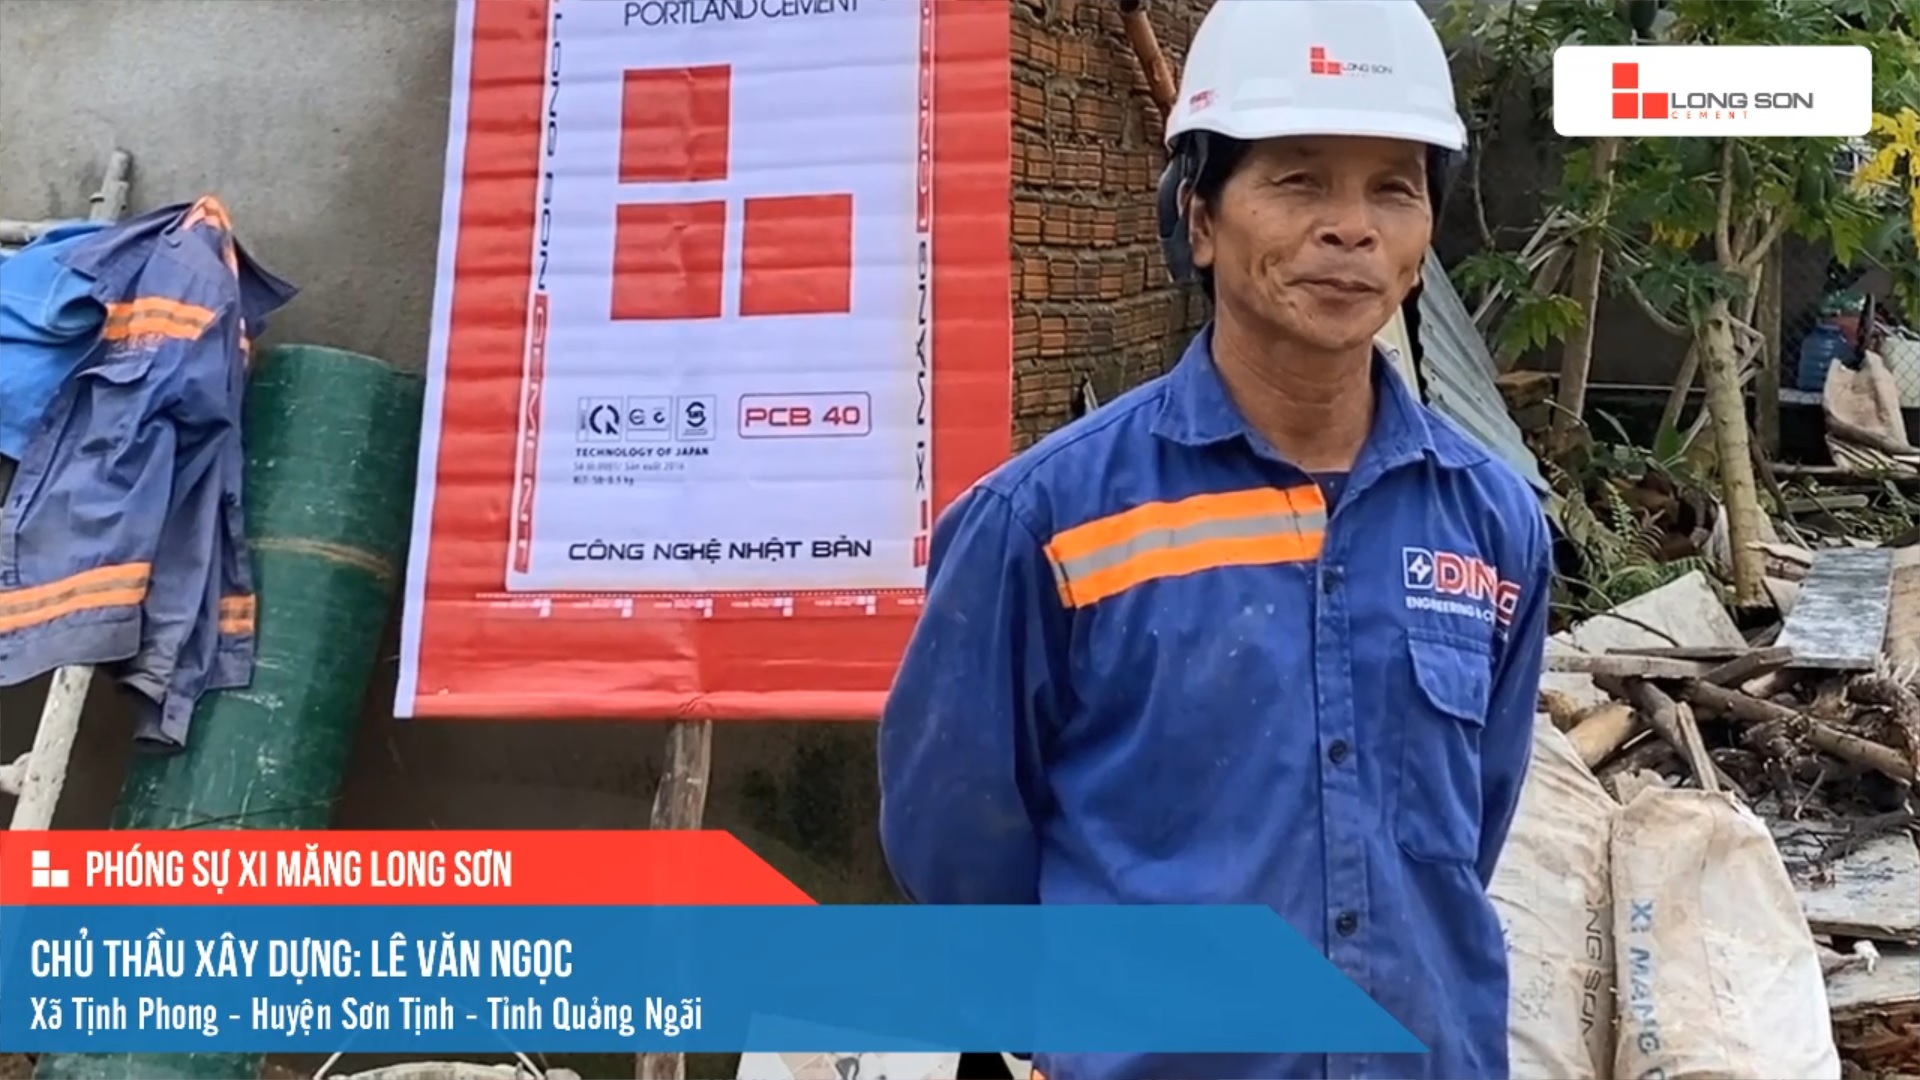 Phóng sự công trình sử dụng xi măng Long Sơn tại Quảng Ngãi ngày 12/11/2021